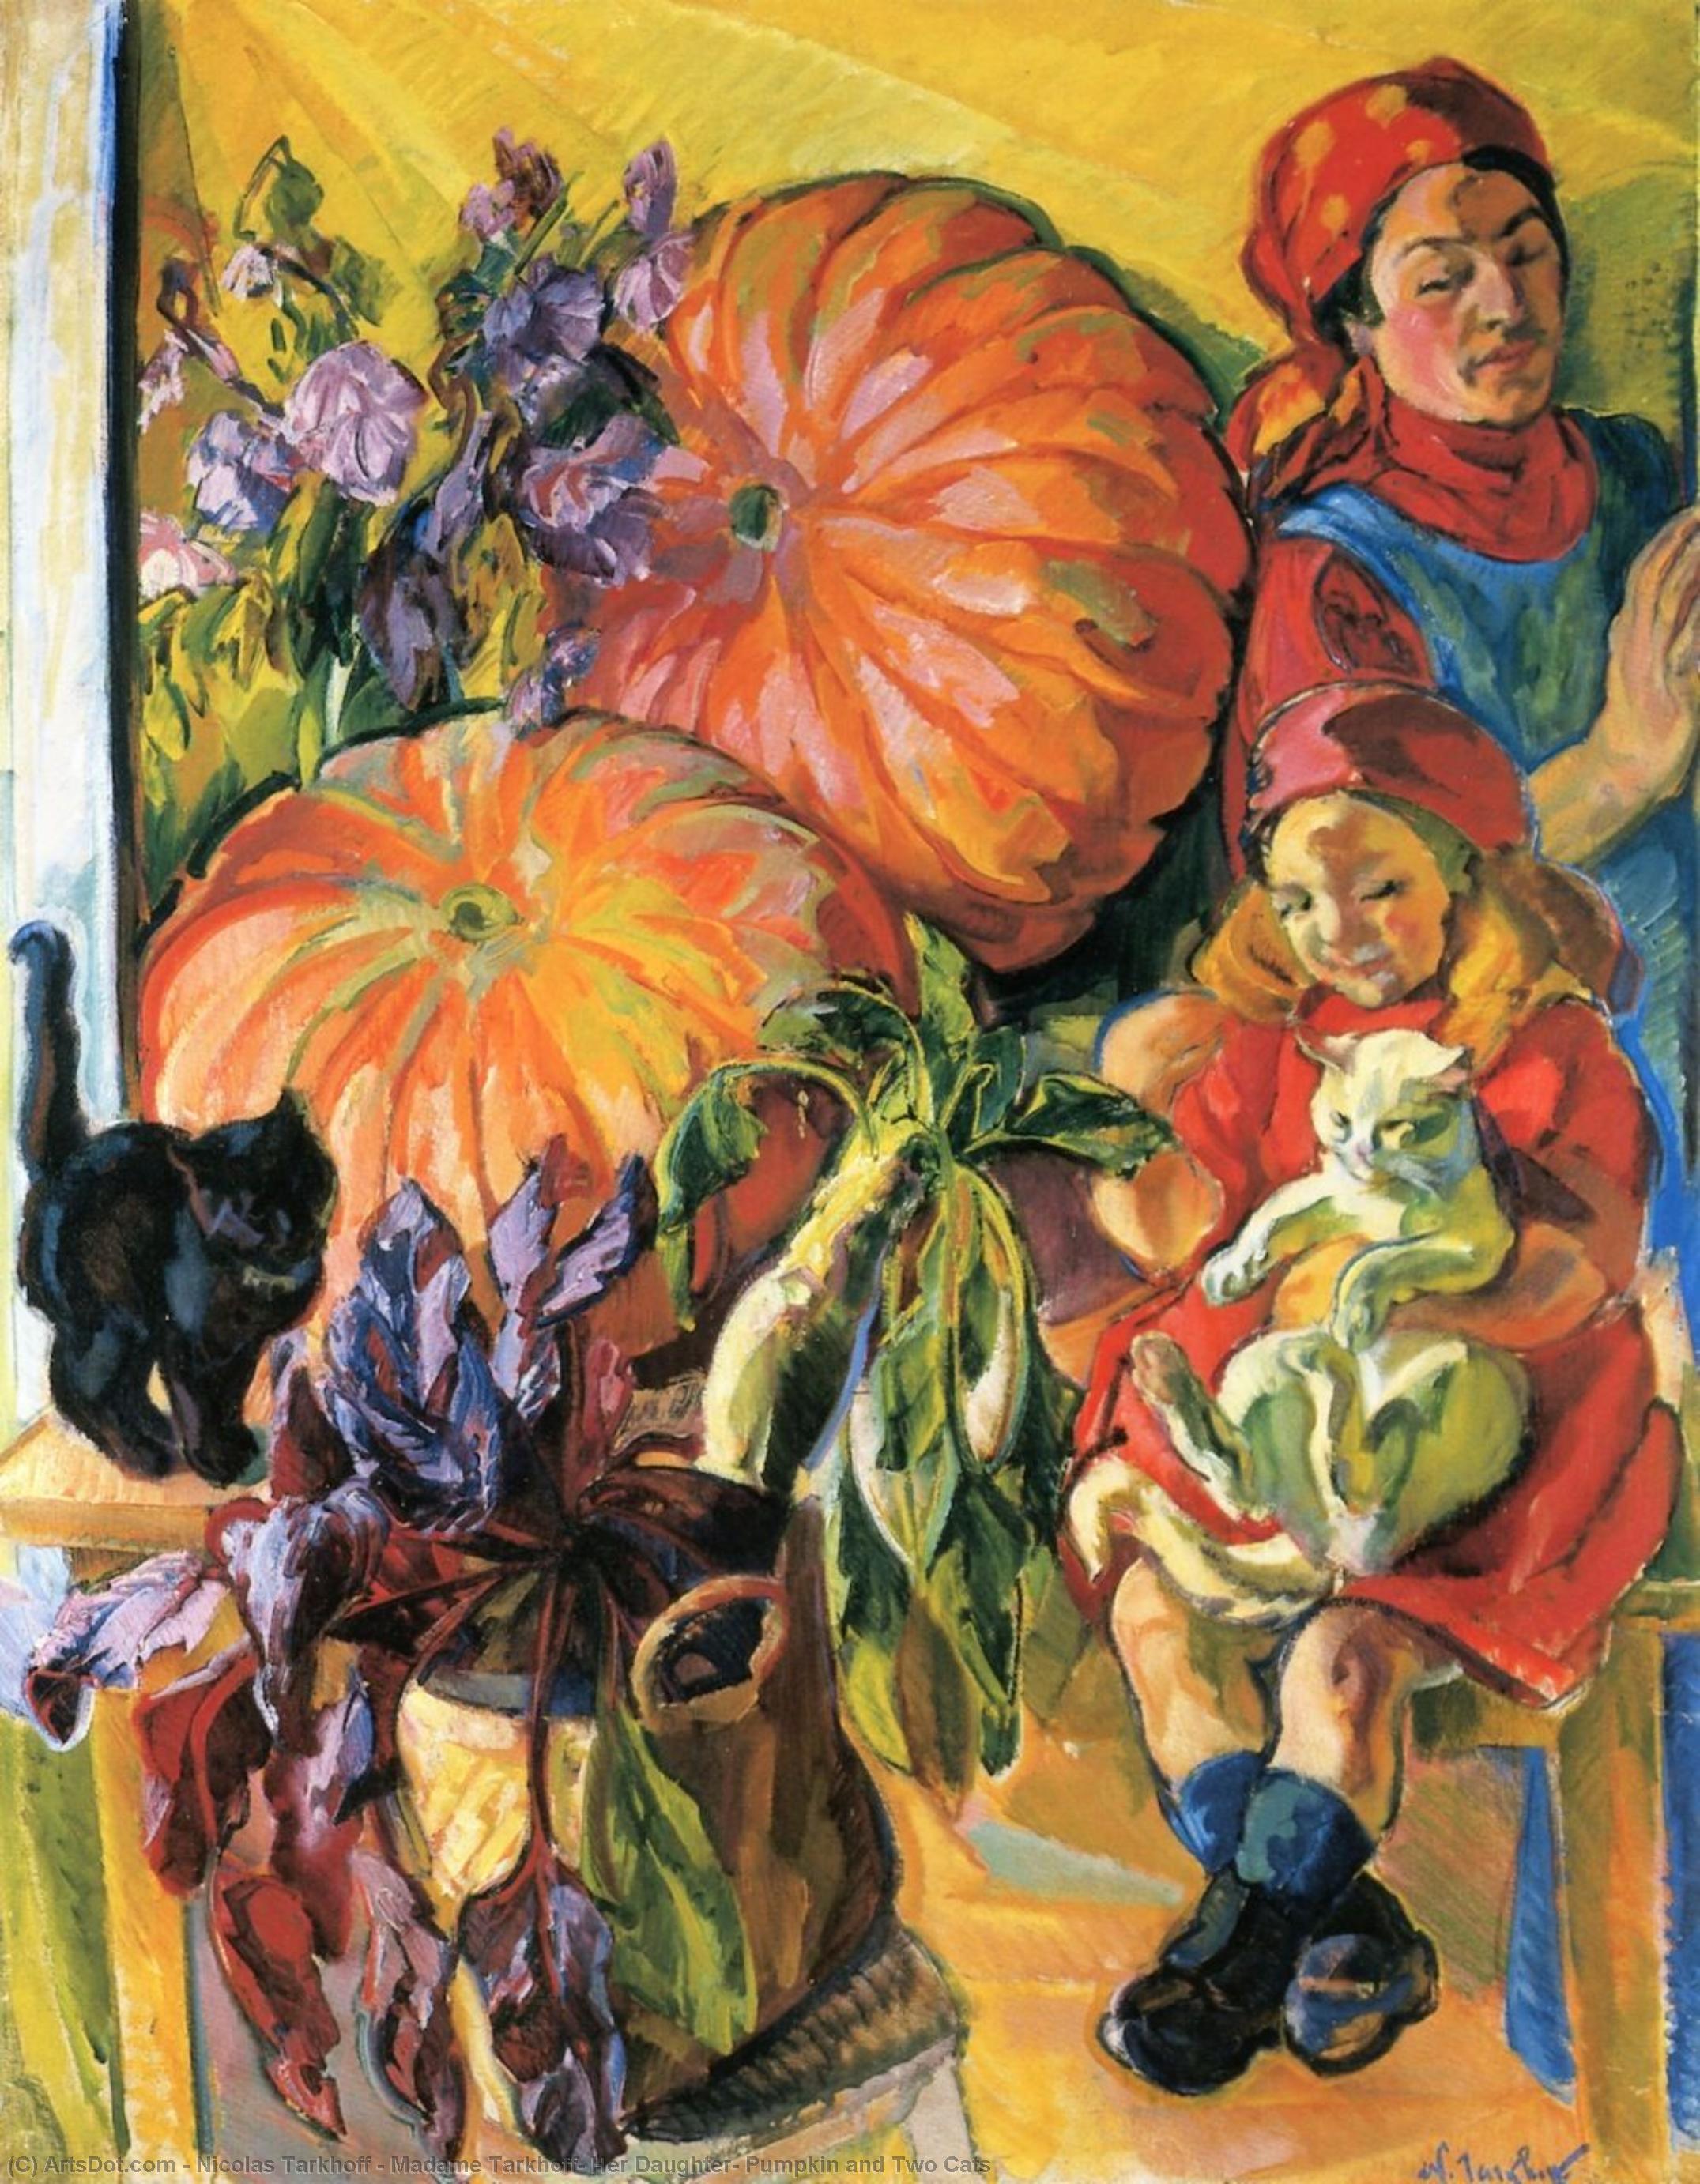 Ordinare Riproduzioni Di Belle Arti Madame Tarkhoff, sua figlia, zucca e due gatti di Nicolas Tarkhoff (1871-1930) | ArtsDot.com